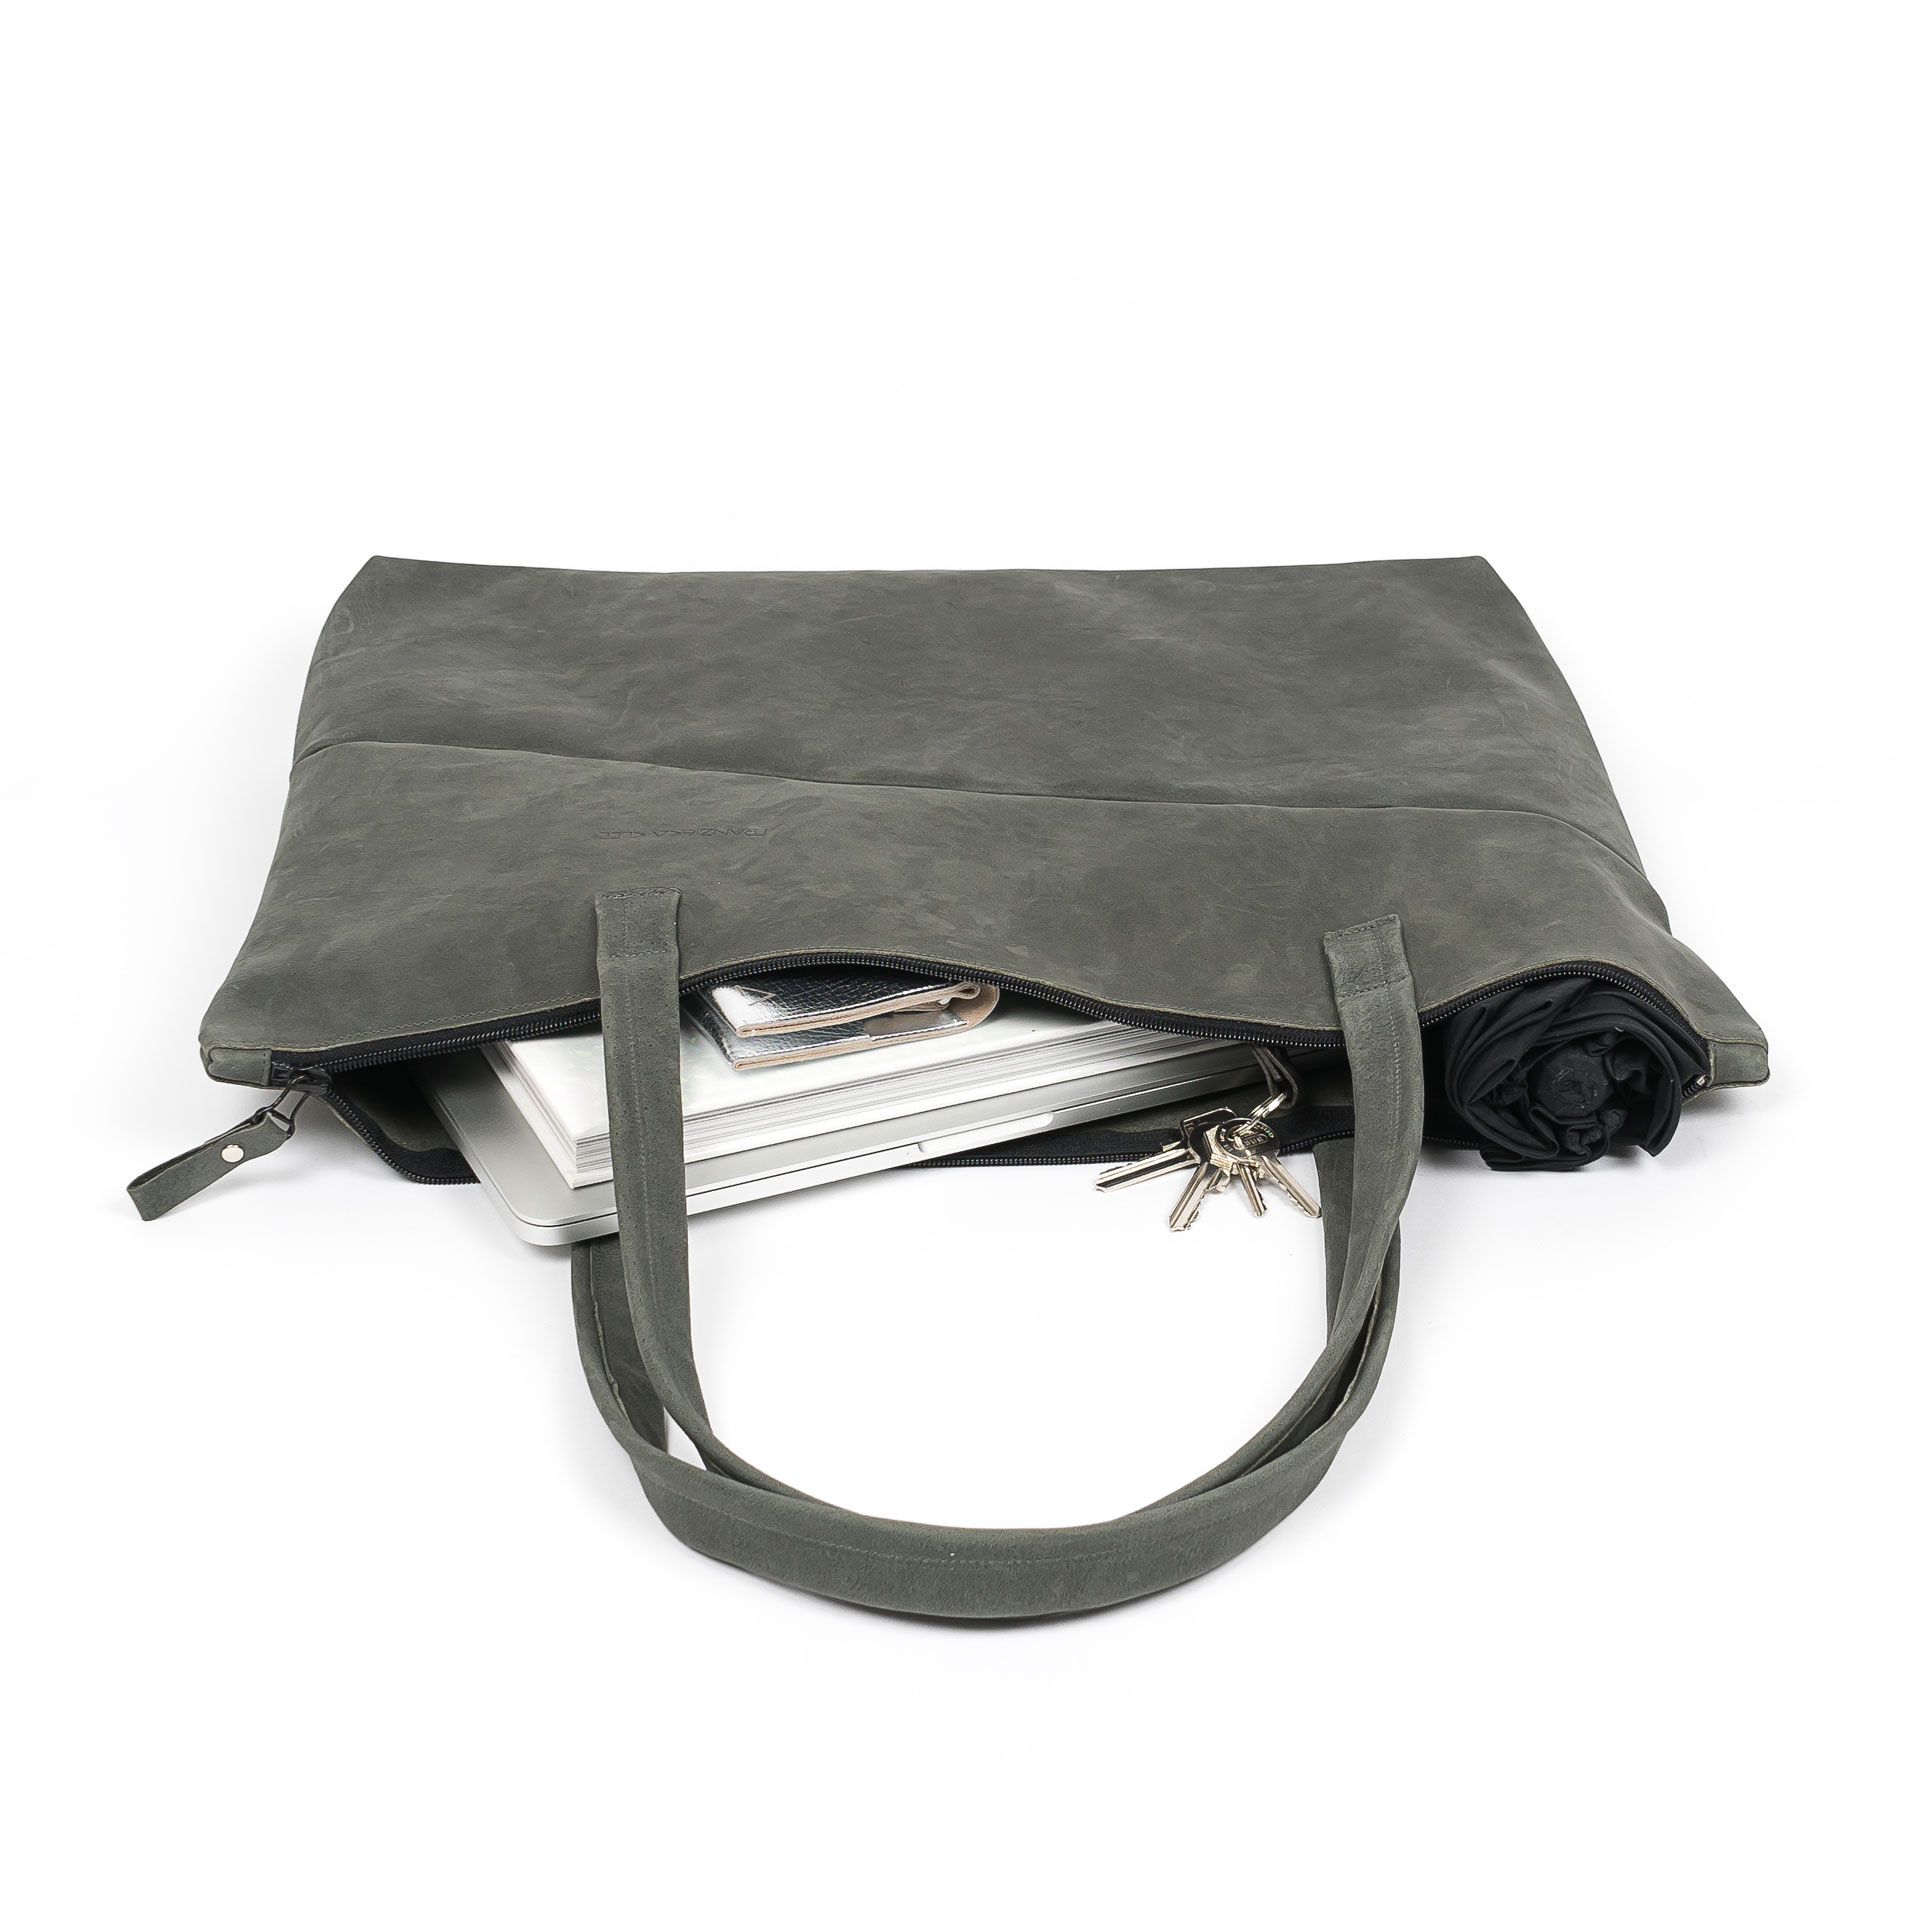 XXL-Shopper ELA aus nachhaltigem Naturleder in Steingrau gepackt mit Laptop, Notizbuch, Schirm und diversen Kleinutensilien